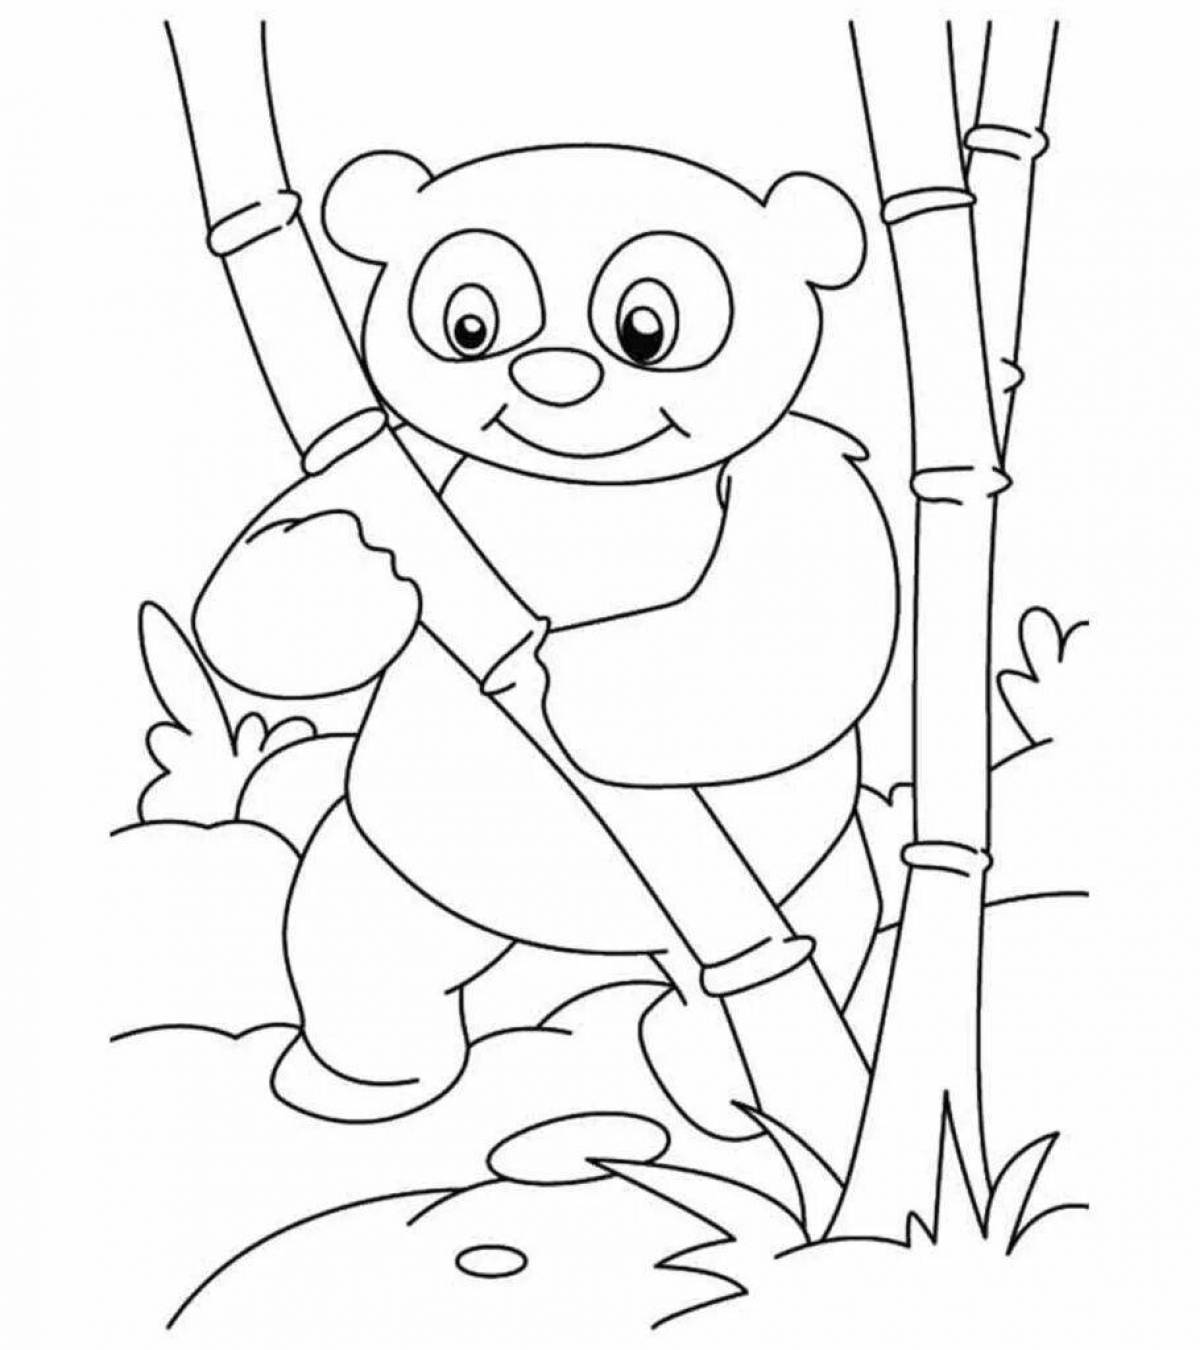 Увлекательная панда-раскраска для детей